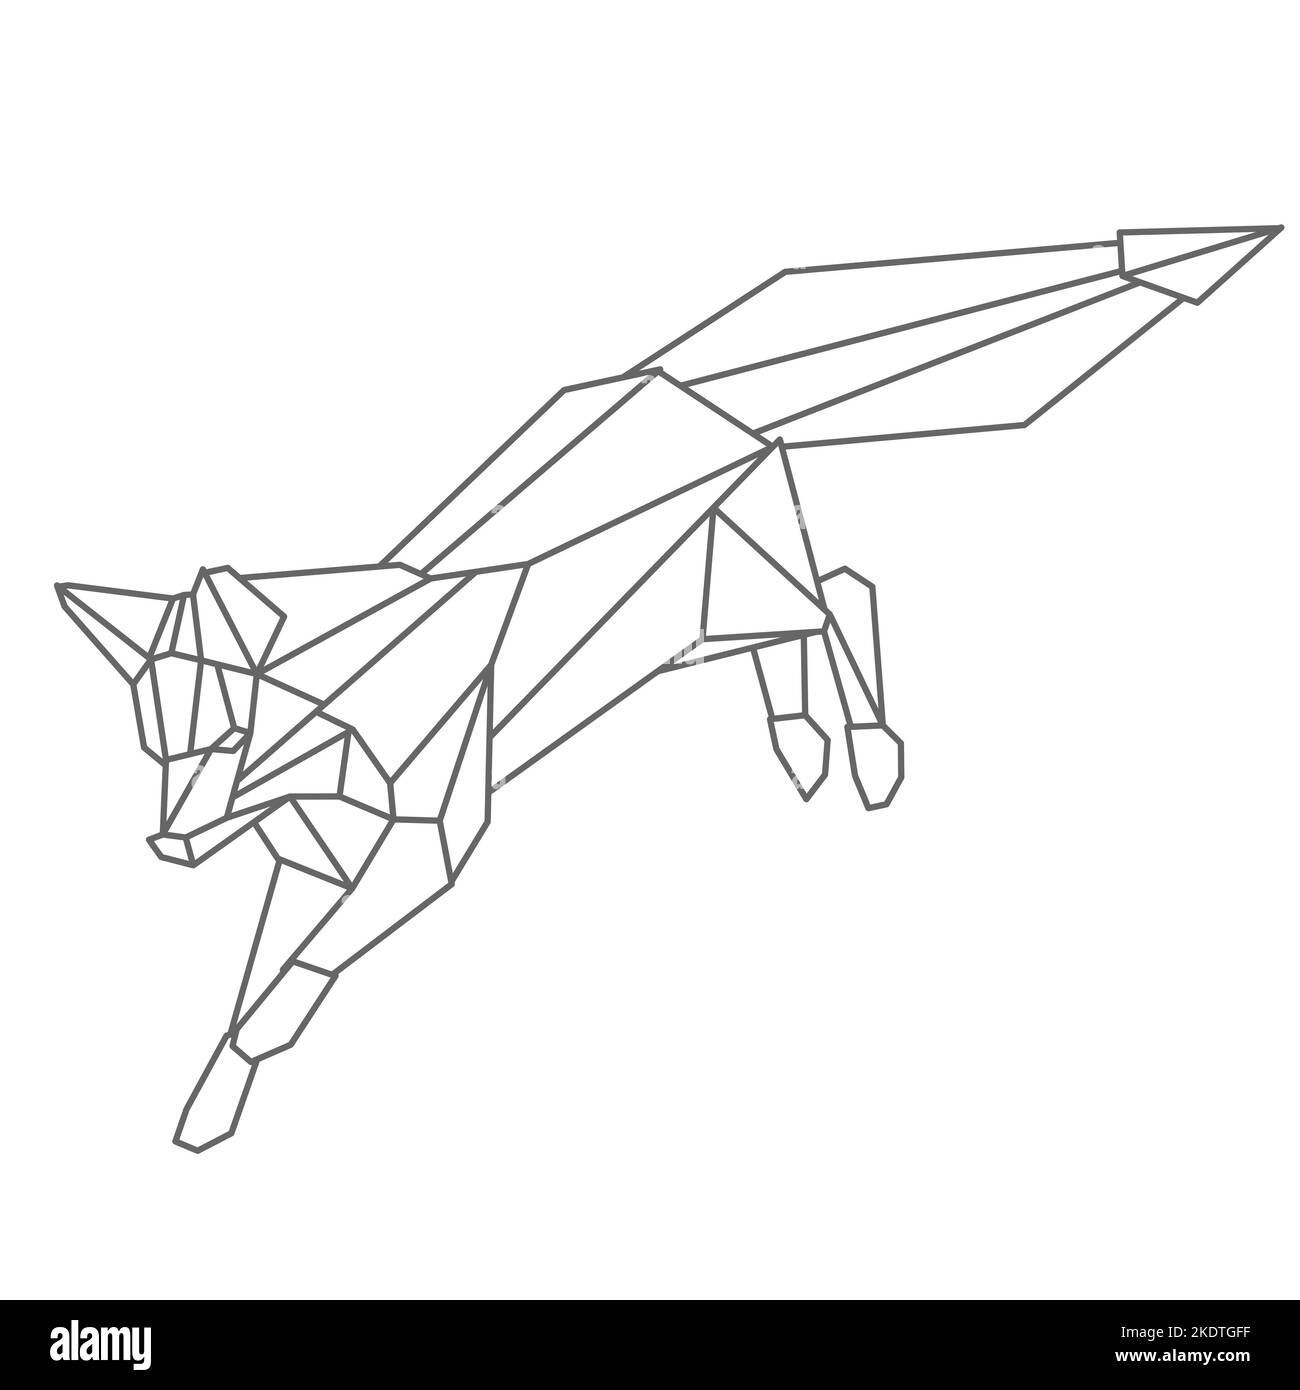 Geometrischer Fuchs im linearen Origami-Stil. Abstrakte minimalistische Illustration von wilden Tieren. Schöner Fuchs springt. Predator auf der Jagd. Einfache stilvolle Cliparts für die Gestaltung von Aufkleber, Karte, Poster. Stock Vektor